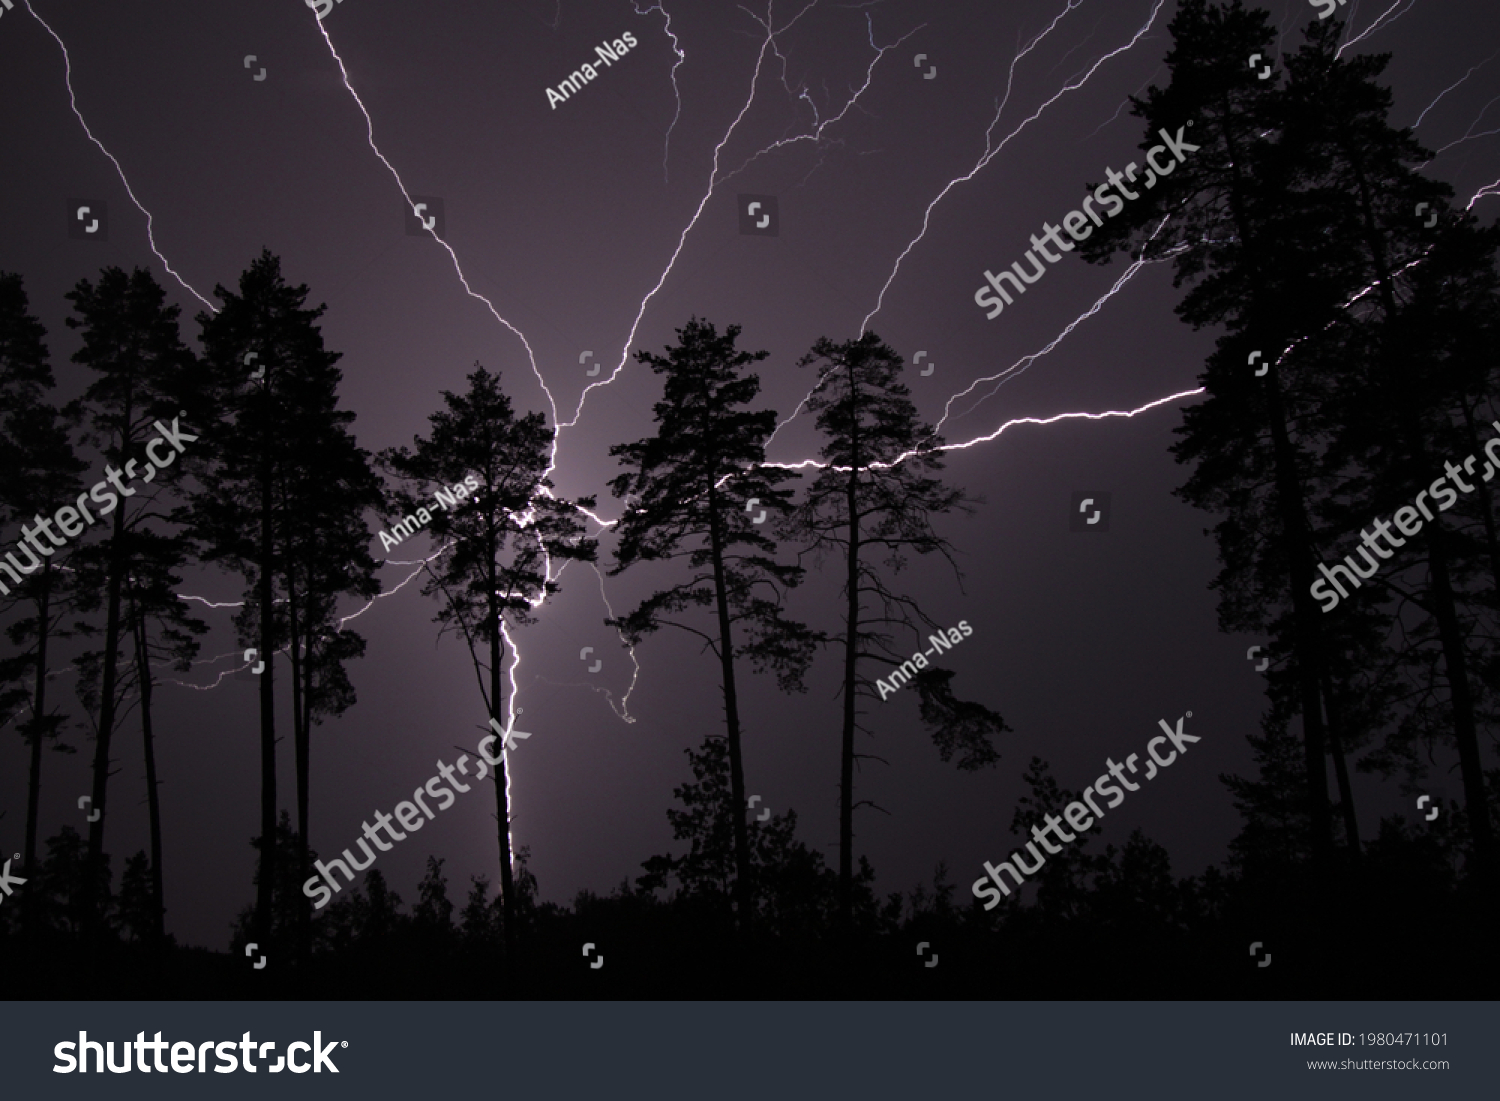 Thunderbolt, lightning bolt in the night sky #1980471101